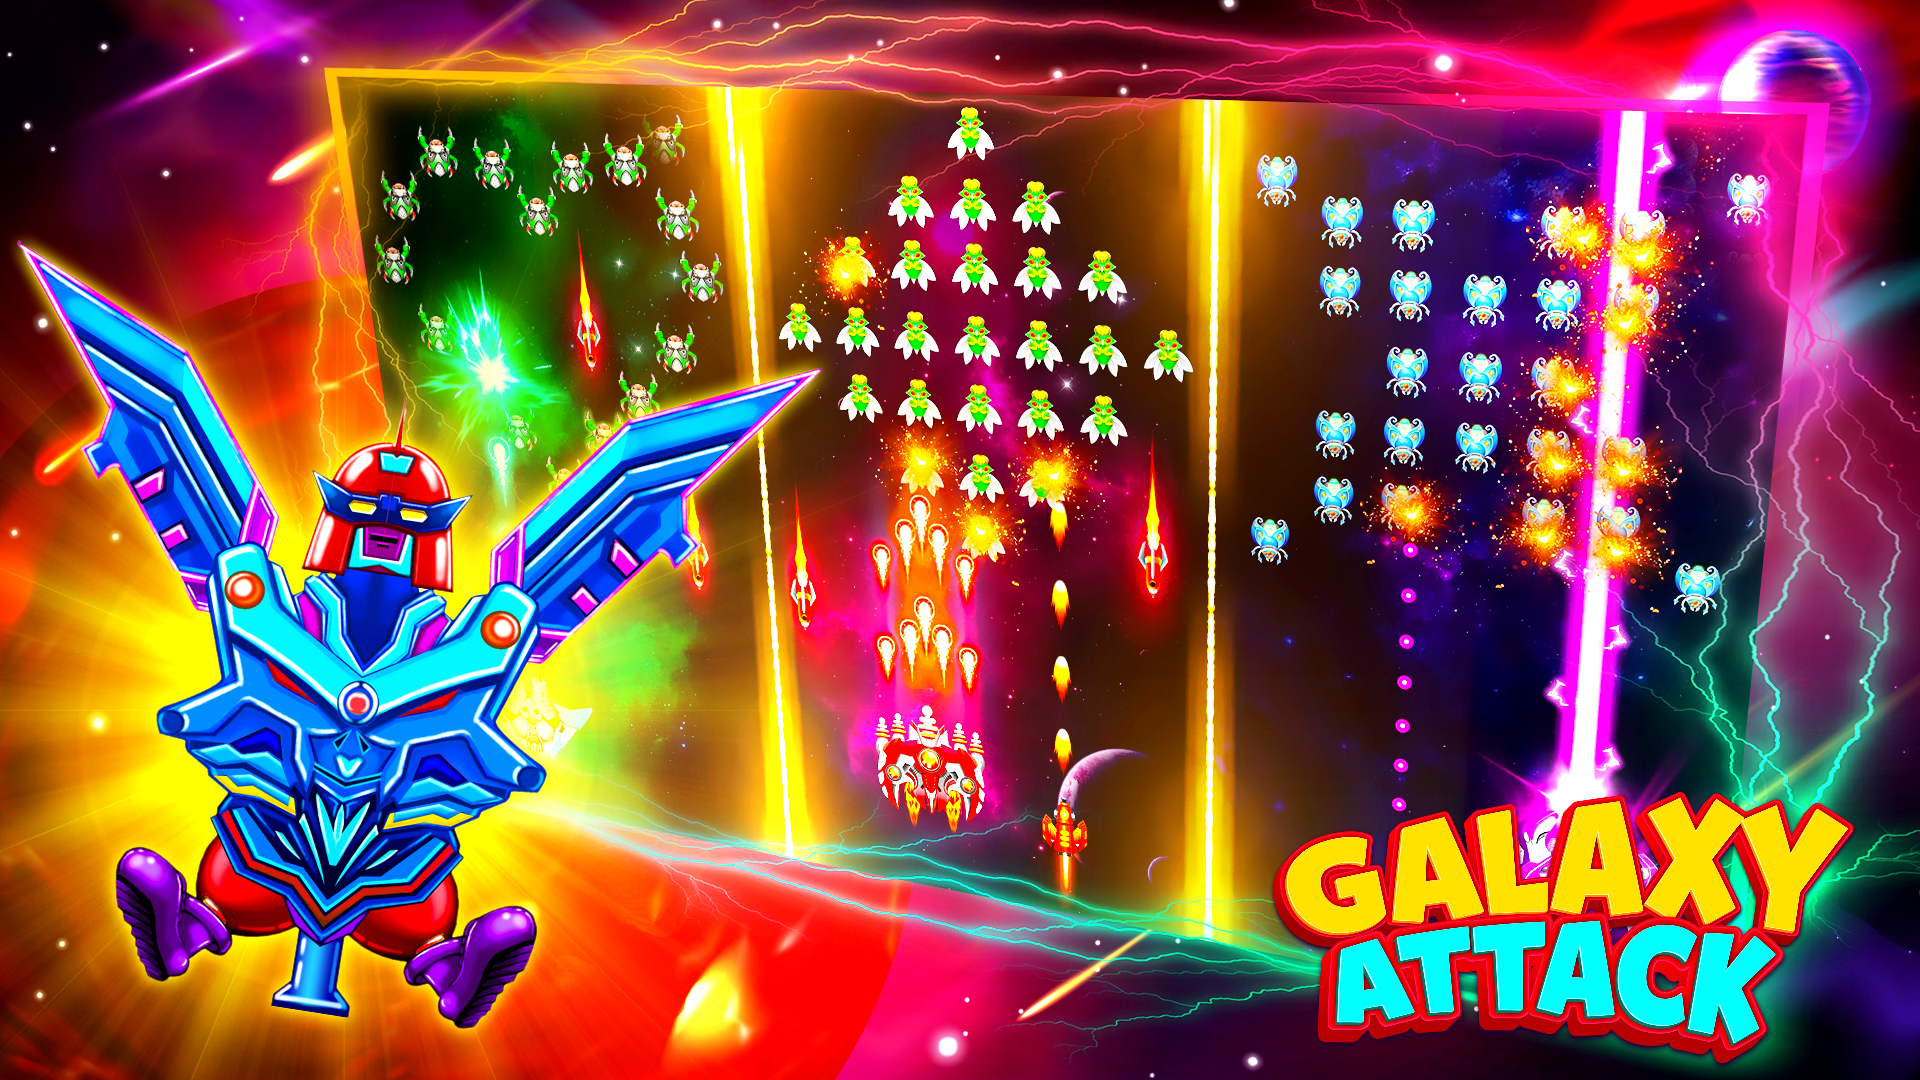 Screenshot 1 of Arcade Shooter- Galaxy Attack 10